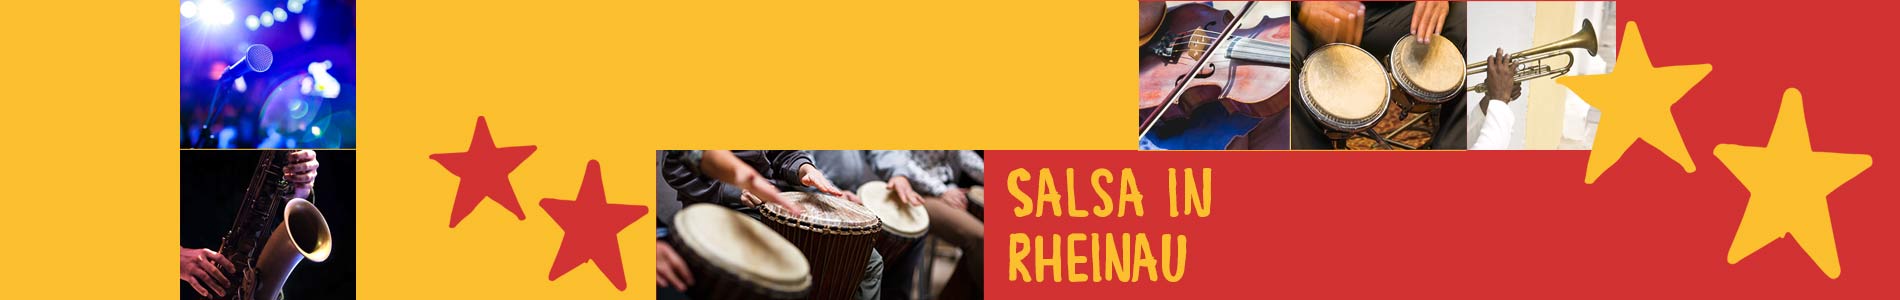 Salsa in Rheinau – Salsa lernen und tanzen, Tanzkurse, Partys, Veranstaltungen